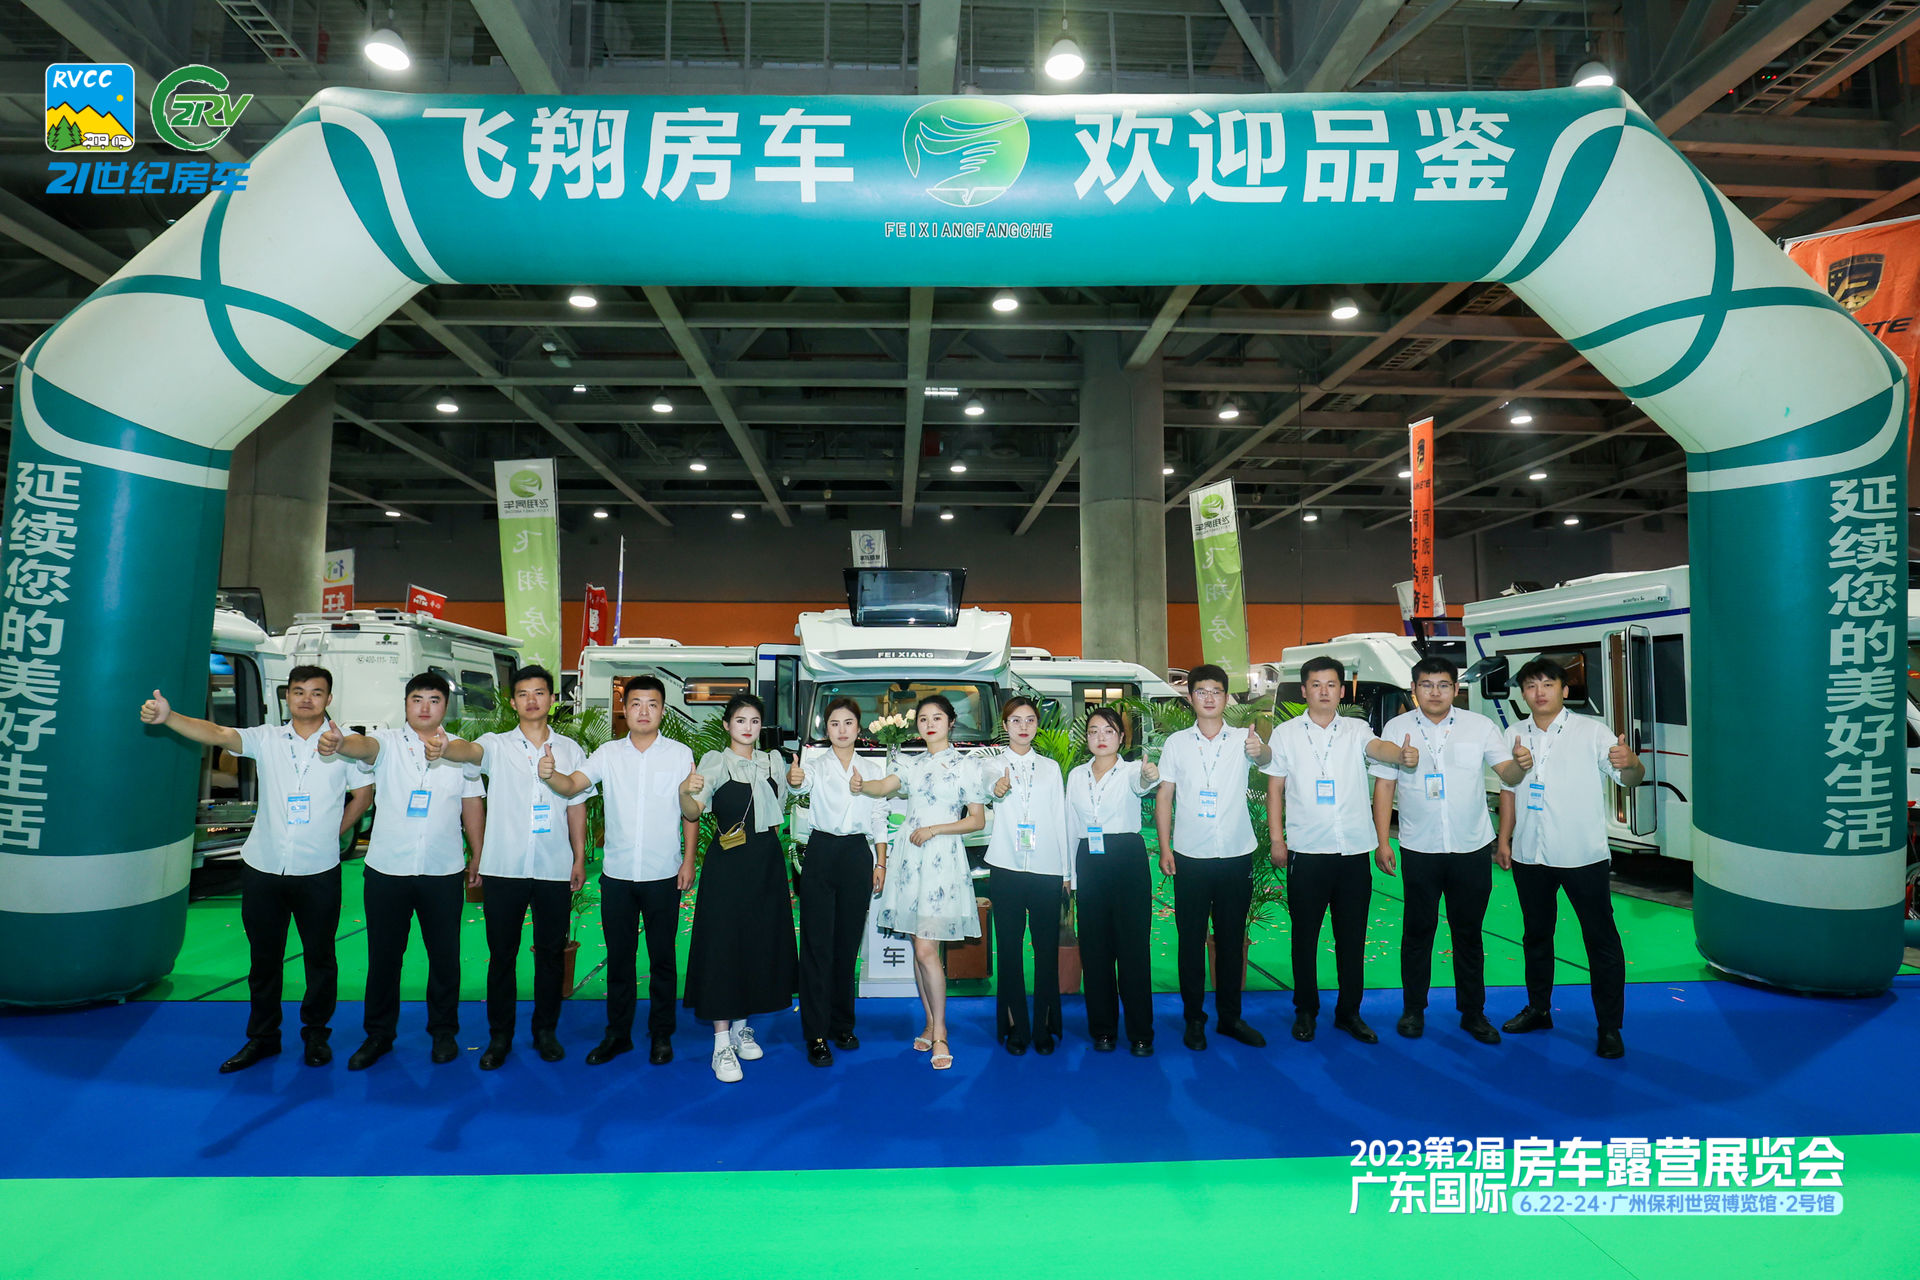 第3届广东国际房车露营展览会